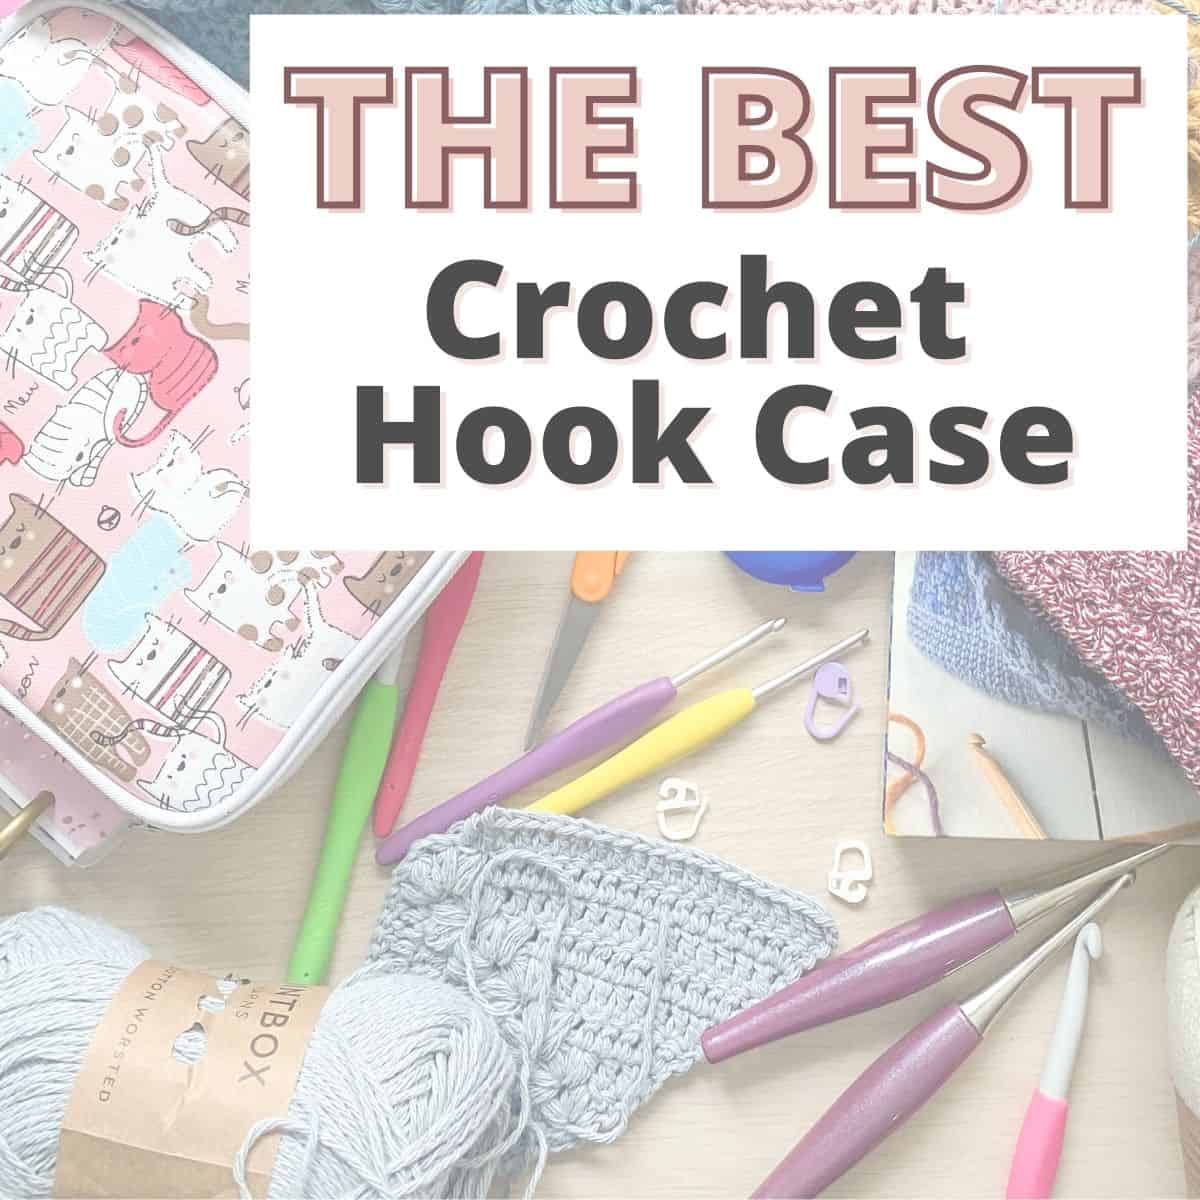 Knitting Needle Case Crochet Hook Case Large Crochet Needle and